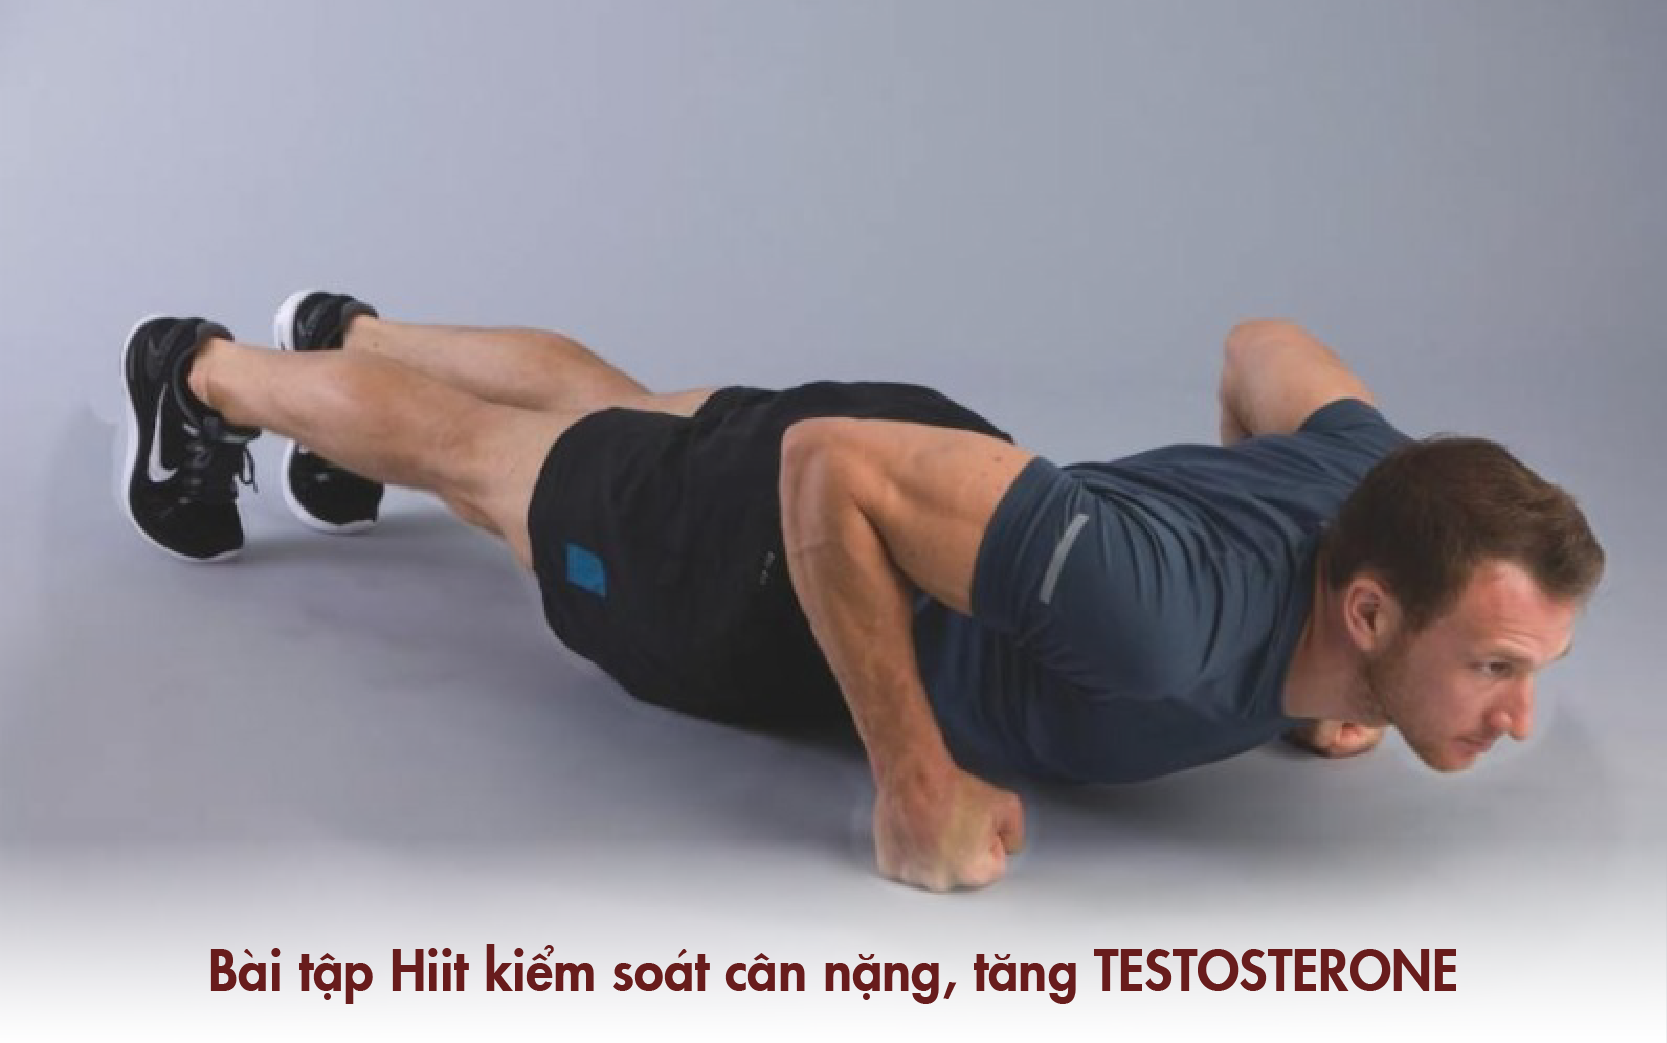 Bài tập Hiit giúp tăng sức khỏe đồng thời tăng cường Testosterone tự nhiên cho nam giới